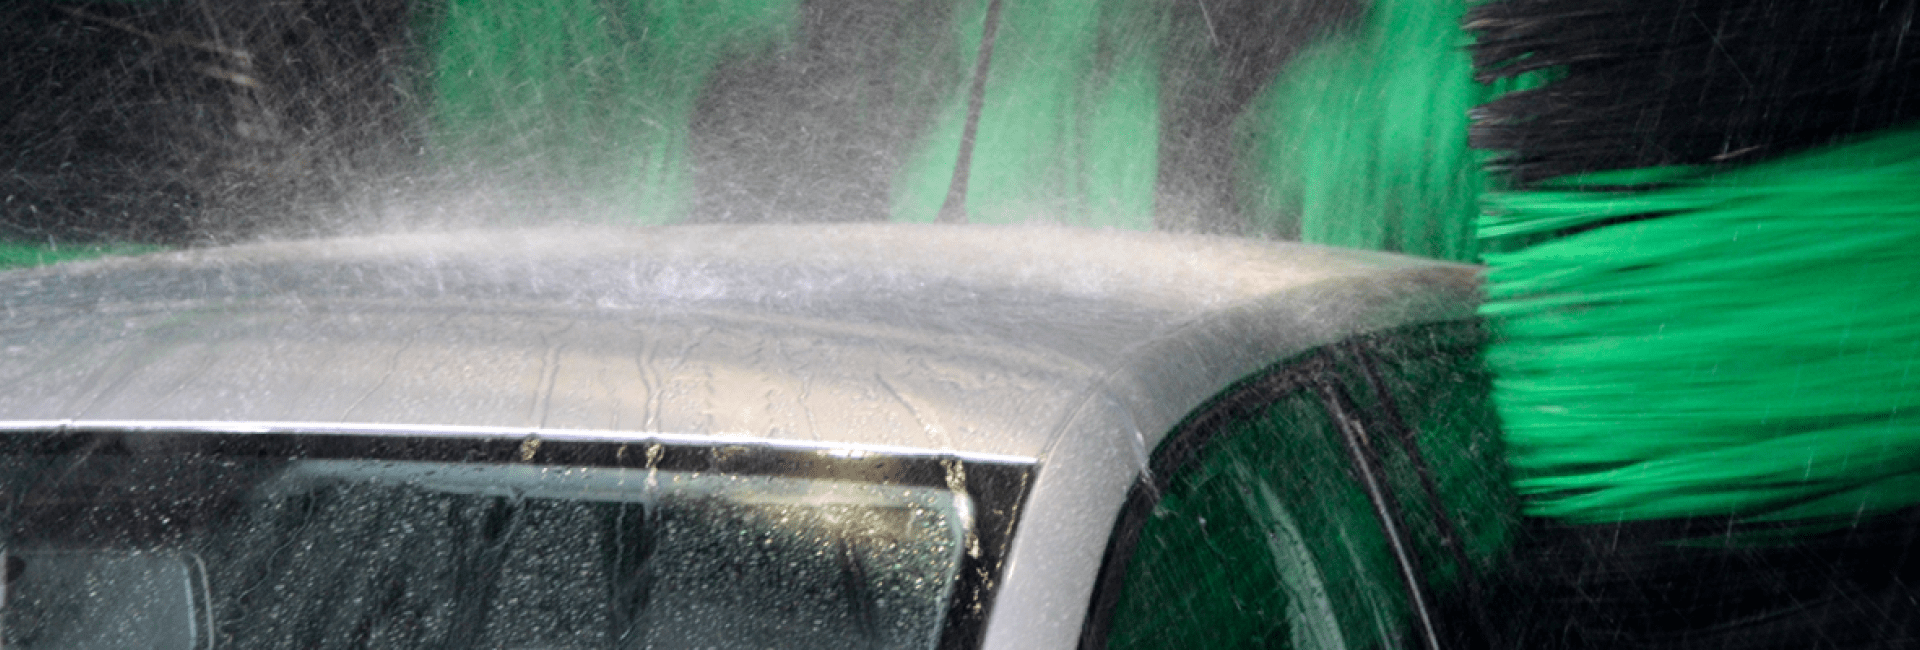 Die Oberseite eines Autos, an der das Wasser als starker Regen herunterläuft, wenn es von den Hochdruckdüsen einer Rollover-Waschanlage gewaschen wird